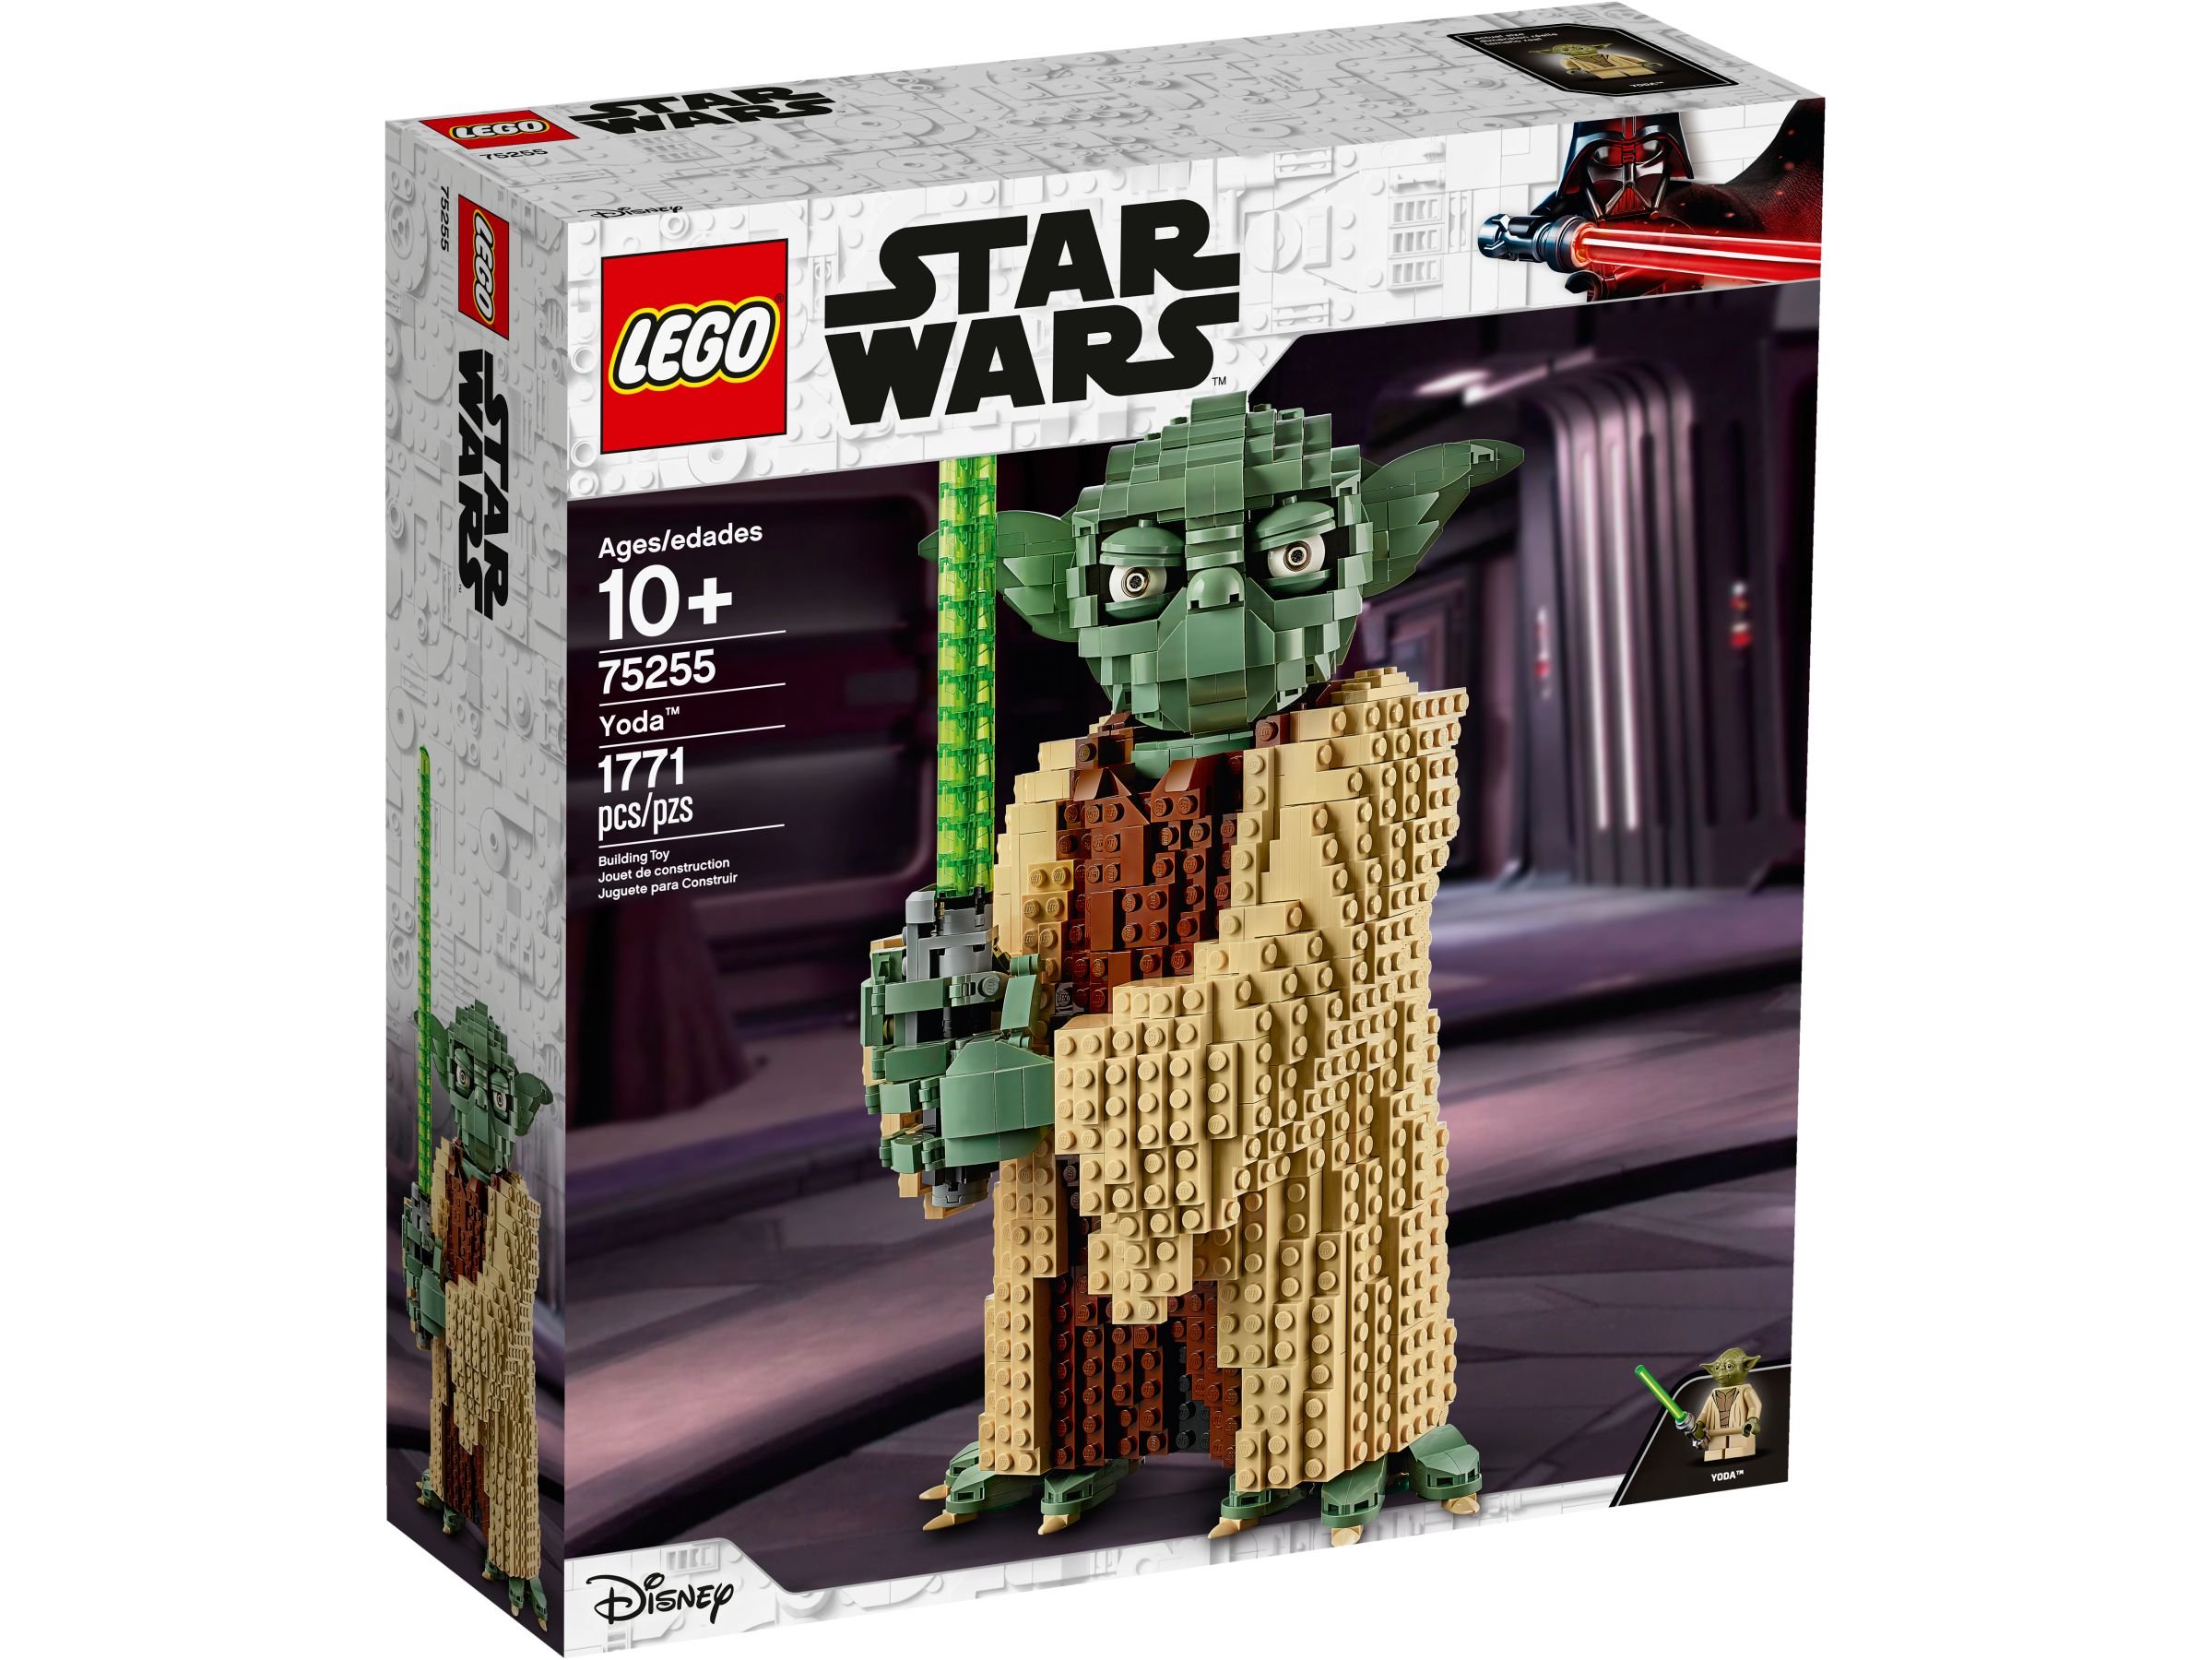 LEGO Star Wars 75255 Yoda™ LEGO_75255_alt1.jpg